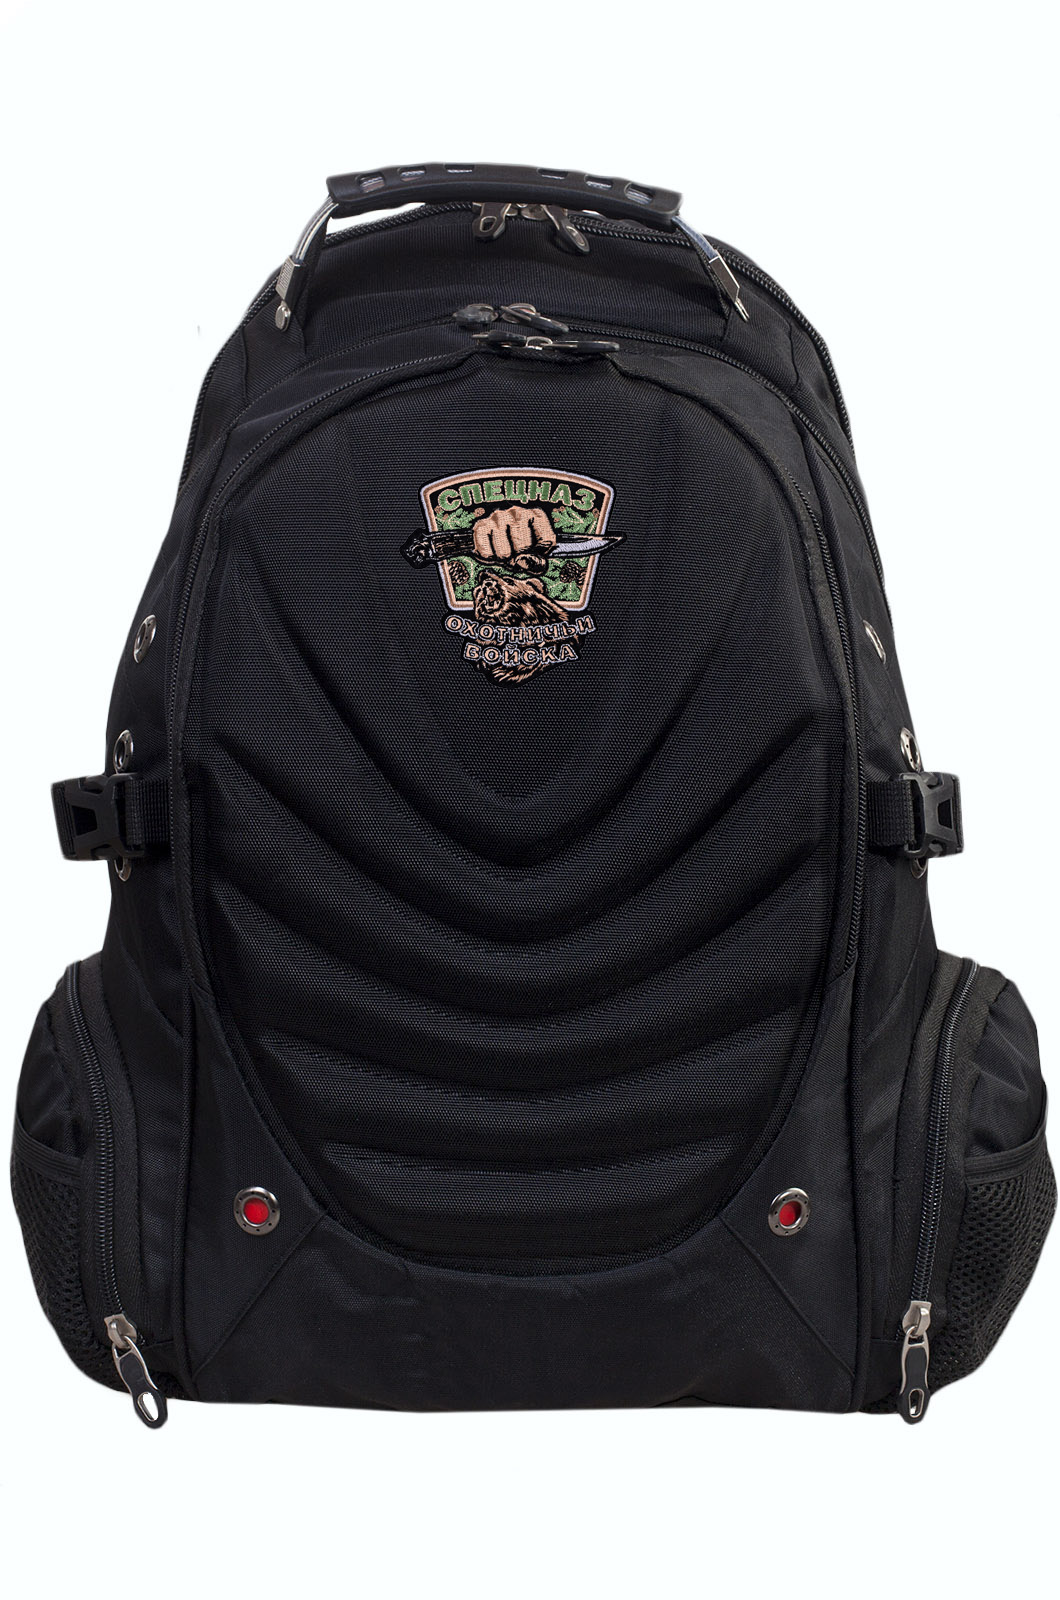 Купить черный эргономичный рюкзак с эмблемой Охотничий Спецназ онлайн выгодно